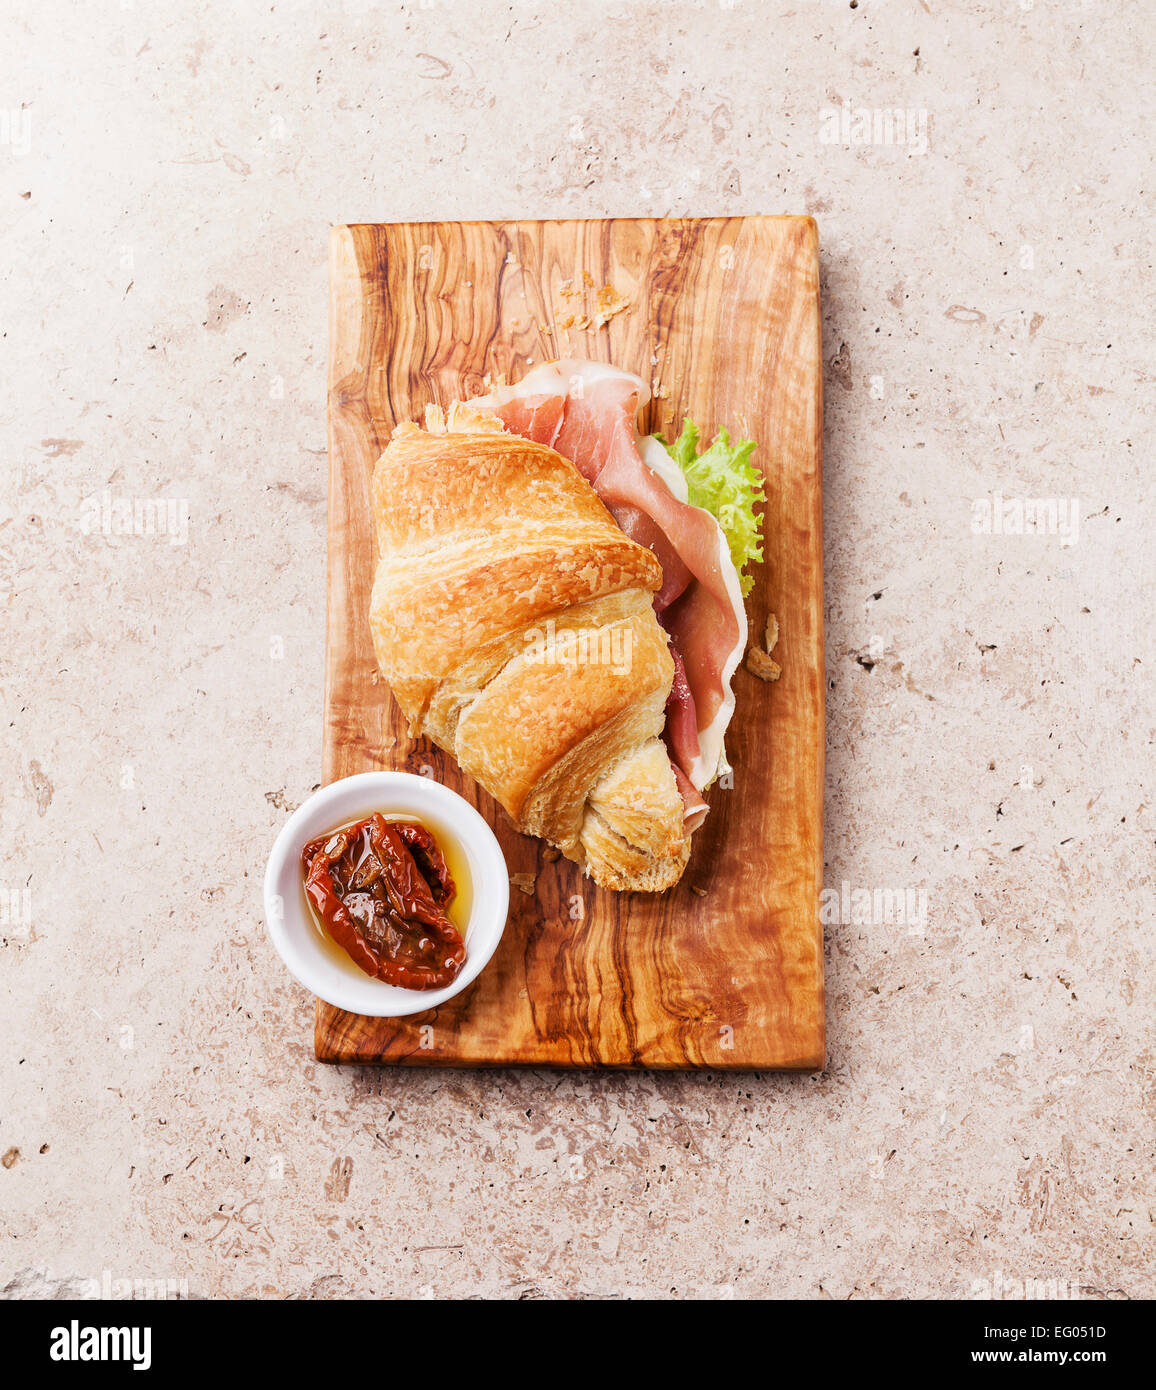 Croissant jambon sandwich sur fond texturé en pierre Banque D'Images